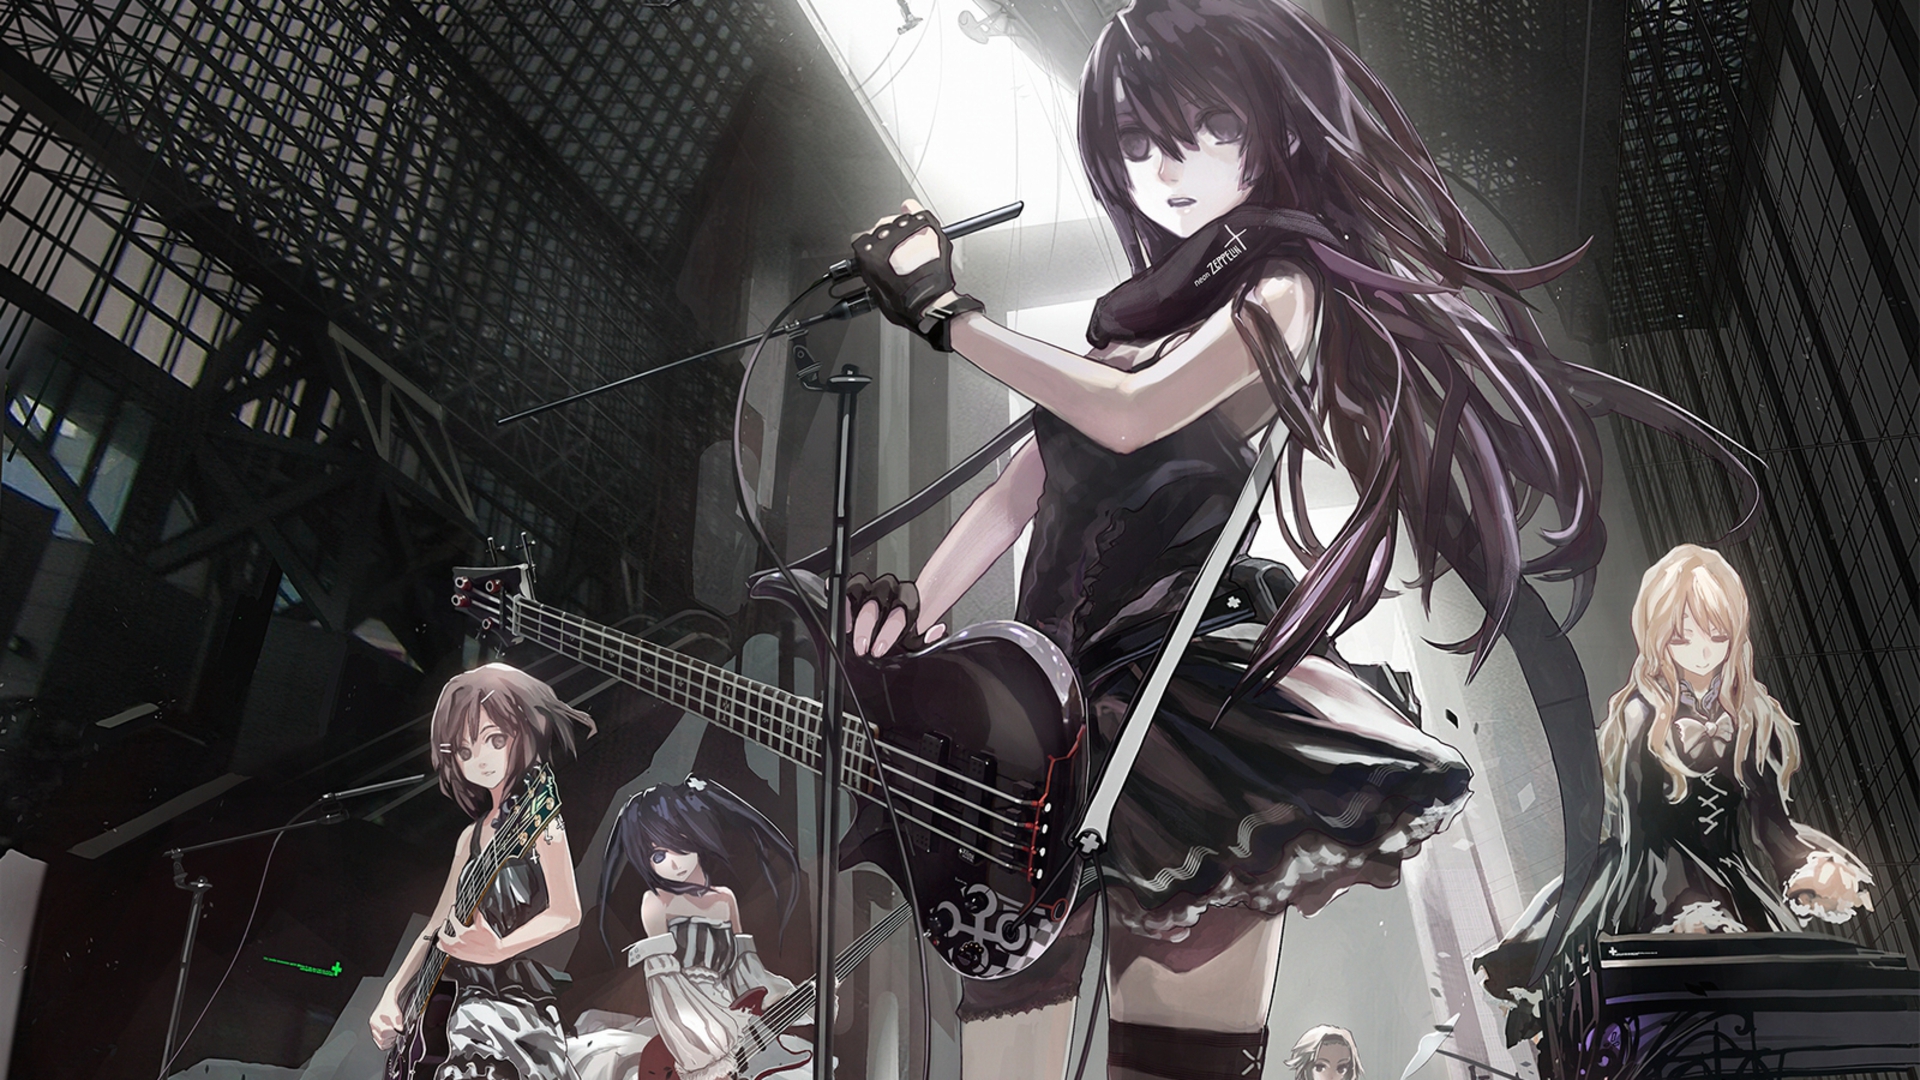  KON Gothic Hirasawa Yui Guitars Akiyama Mio Anime Girls